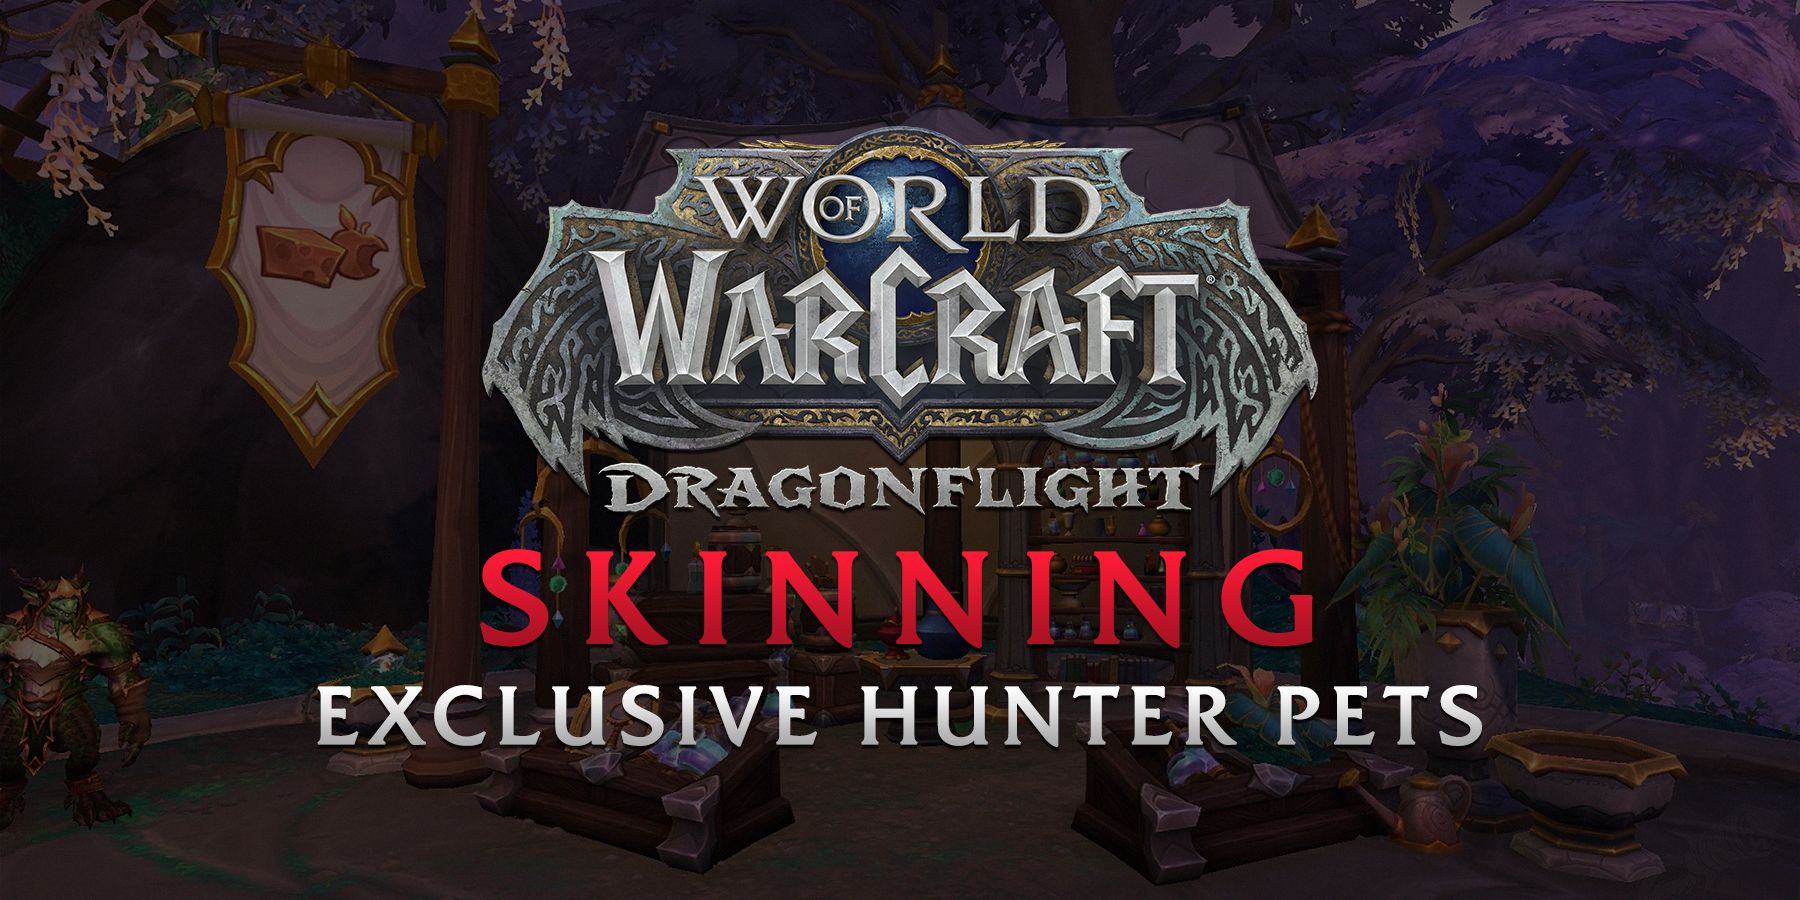 World of Warcraft-spillere kan tæmme unikke kæledyr i Dragonflight med flåning